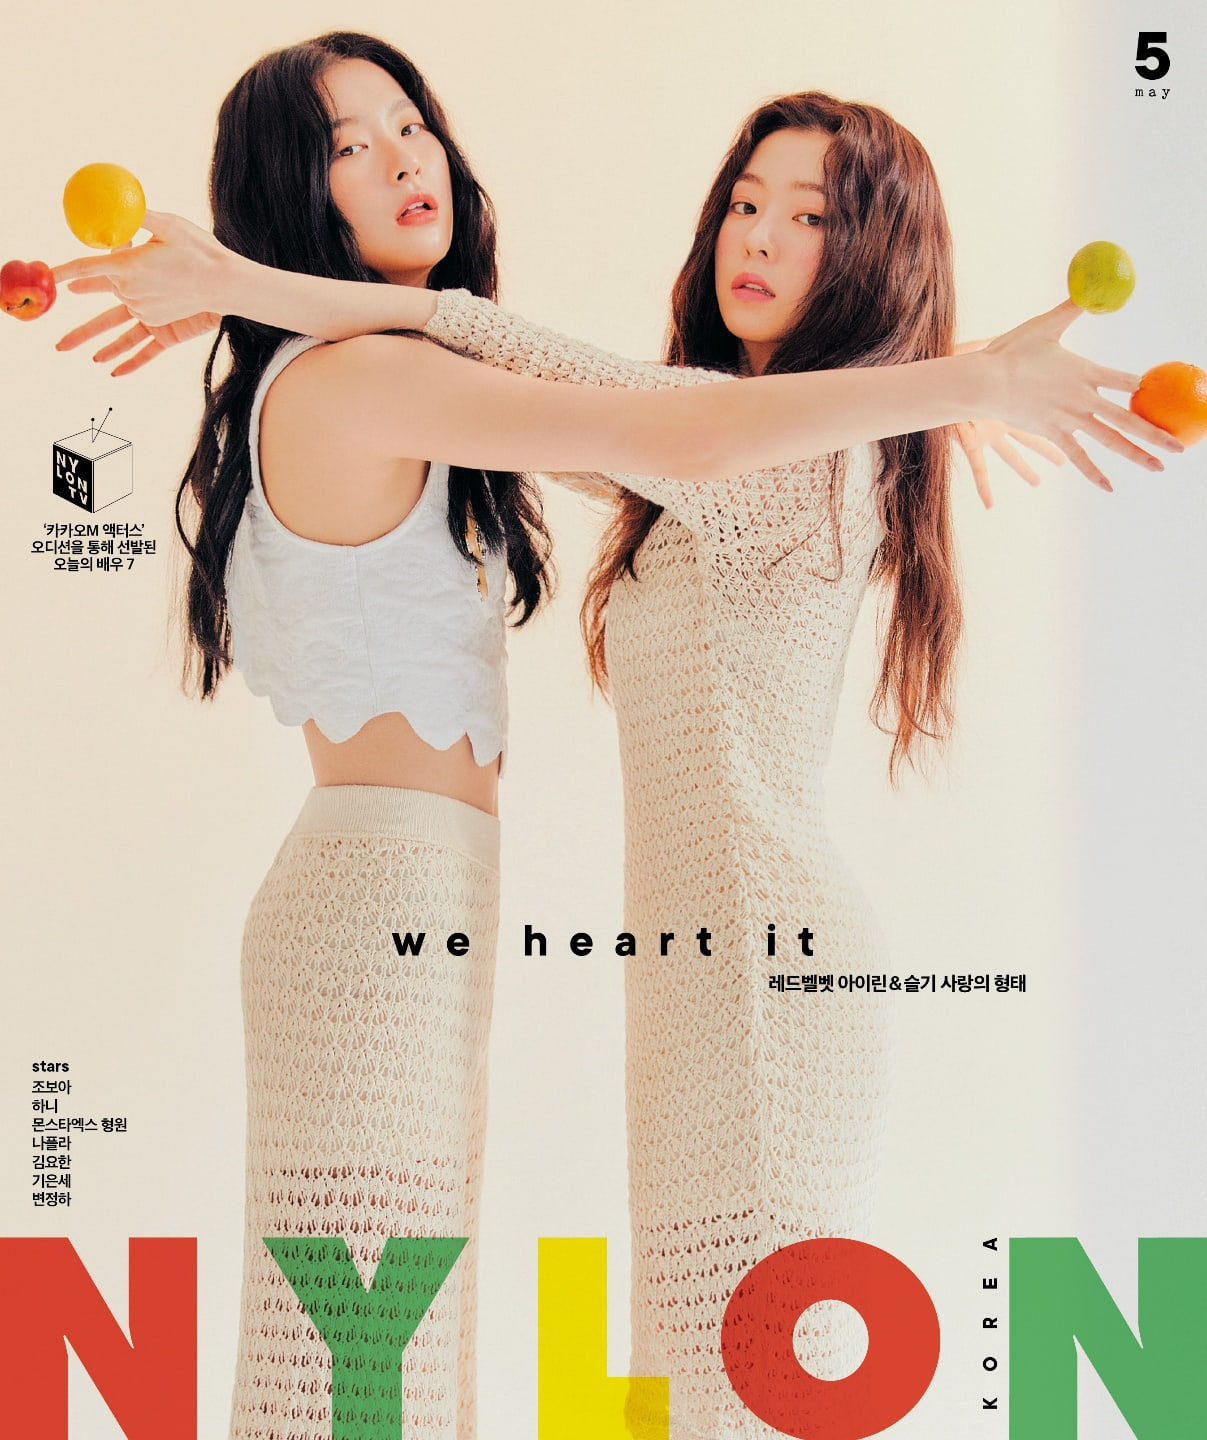 Sub-unit của Irene và Seulgi (Red Velvet) chốt ngày debut, đối đầu trực diện với IZ*ONE nhưng dân tình lại dồn hết chú ý vào logo đẹp nhưng vẫn kỳ cục? - Ảnh 1.